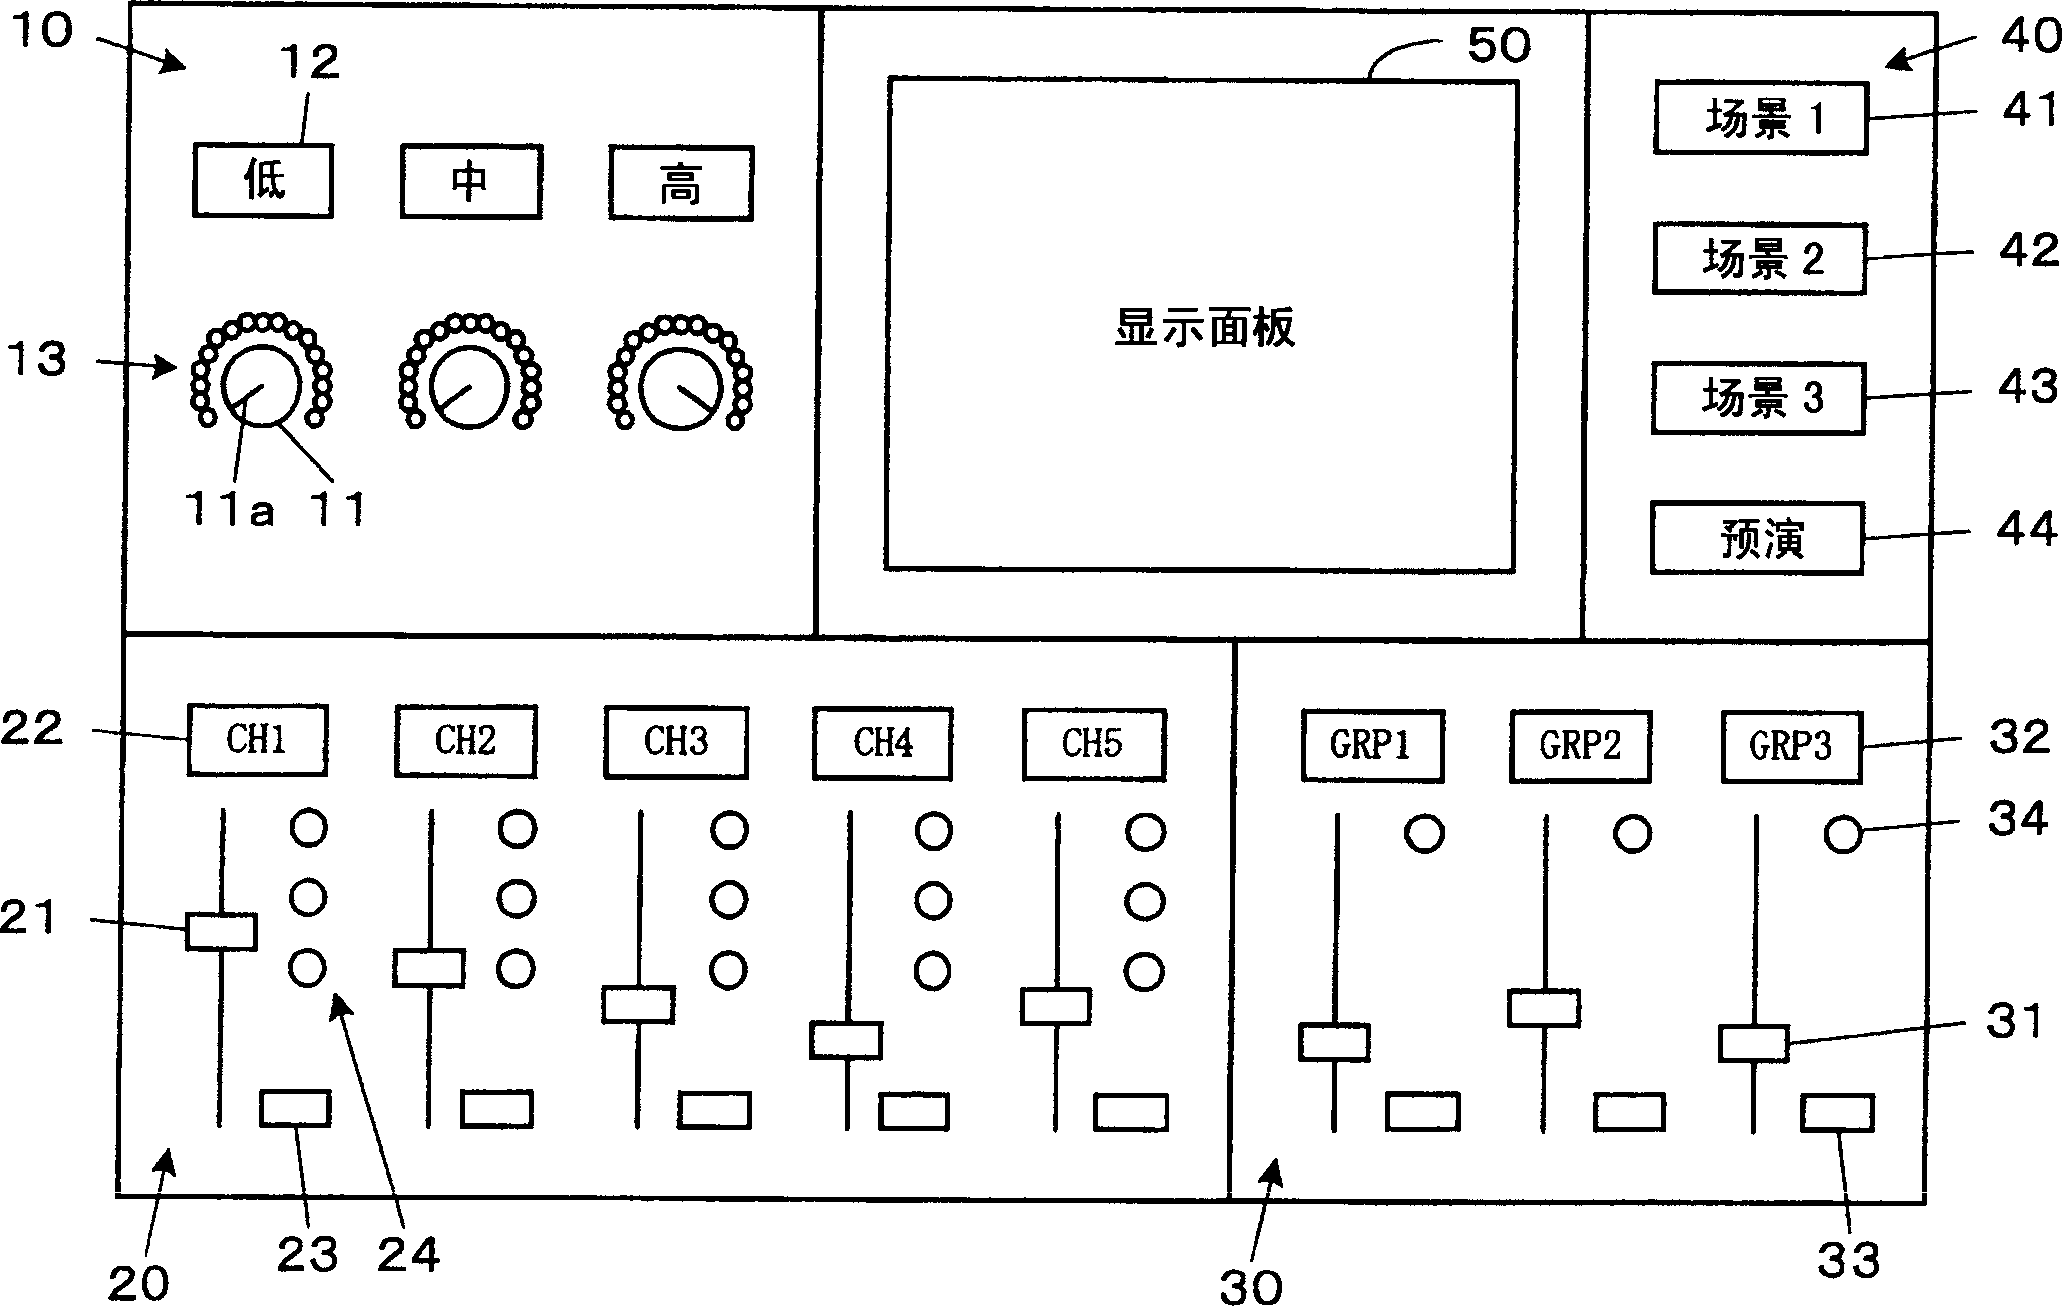 Sound signal processor